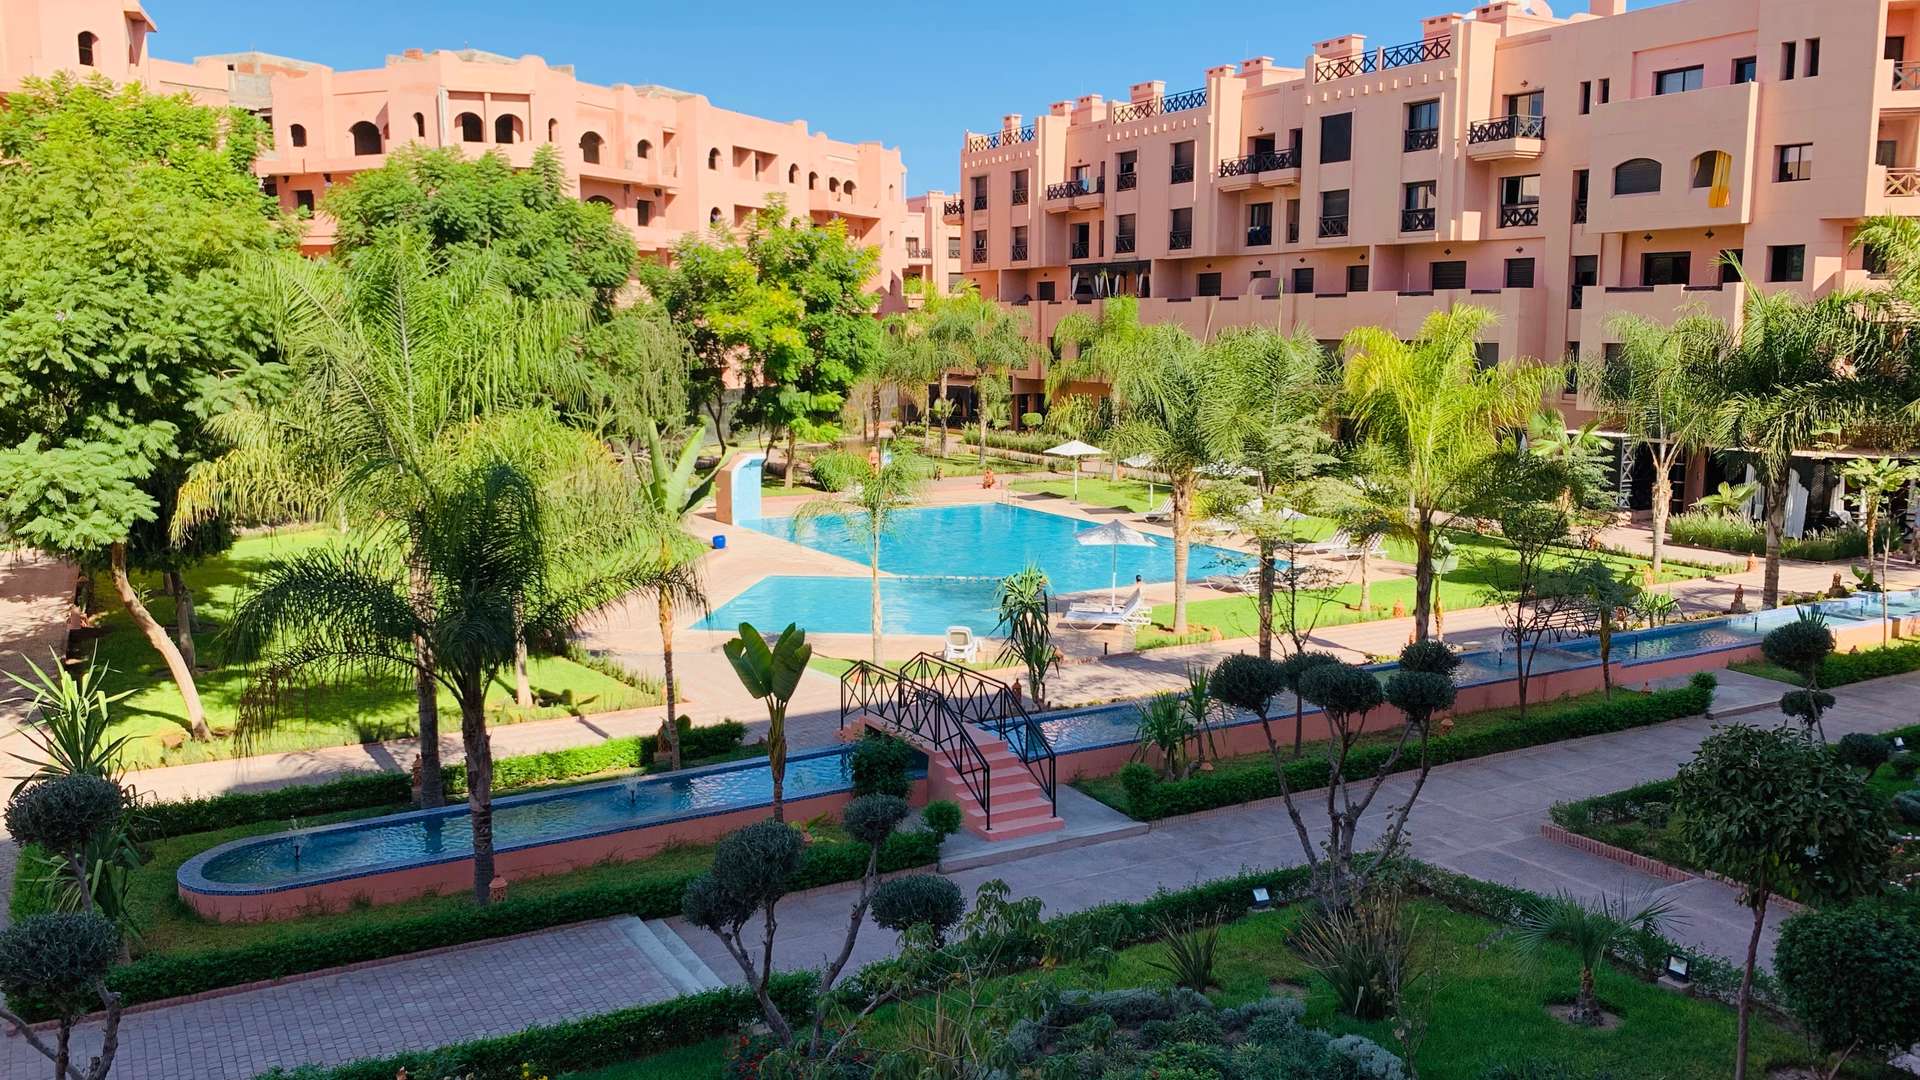 Vente,Appartement,Appartements neufs T3 dans l'une des plus belles résidences de la Palmeraie de Marrakech,Marrakech,Palmeraie